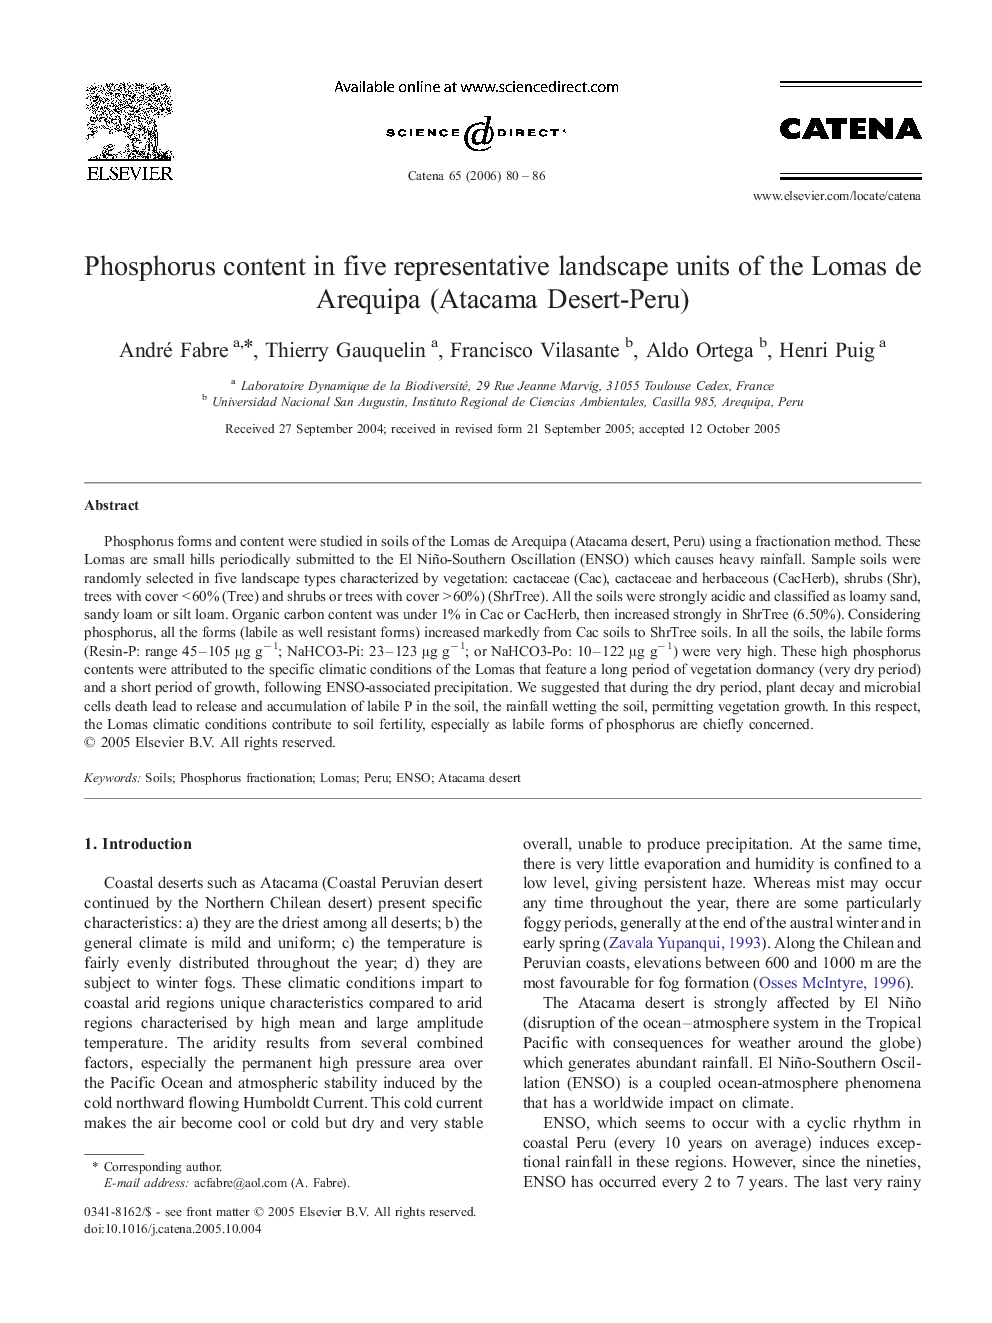 Phosphorus content in five representative landscape units of the Lomas de Arequipa (Atacama Desert-Peru)